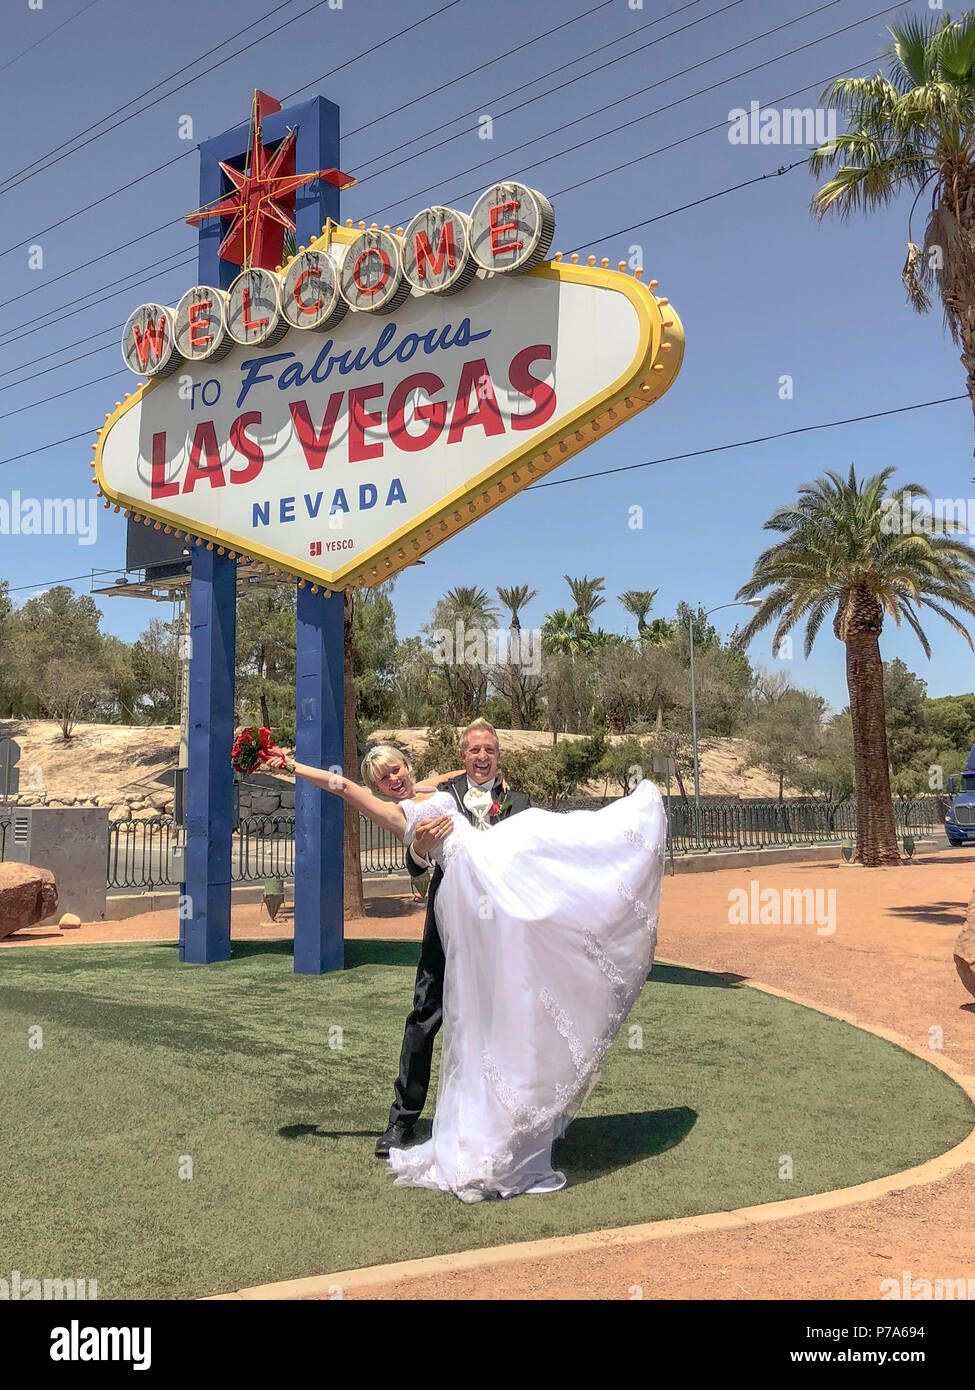 Mariée et marié à Bienvenue au Fabuleux panneau de Las Vegas. Un couple de nouveau-né pose pour la photo, le pot-de-vin soulevant la mariée avec le bouquet dans ses bras. Banque D'Images